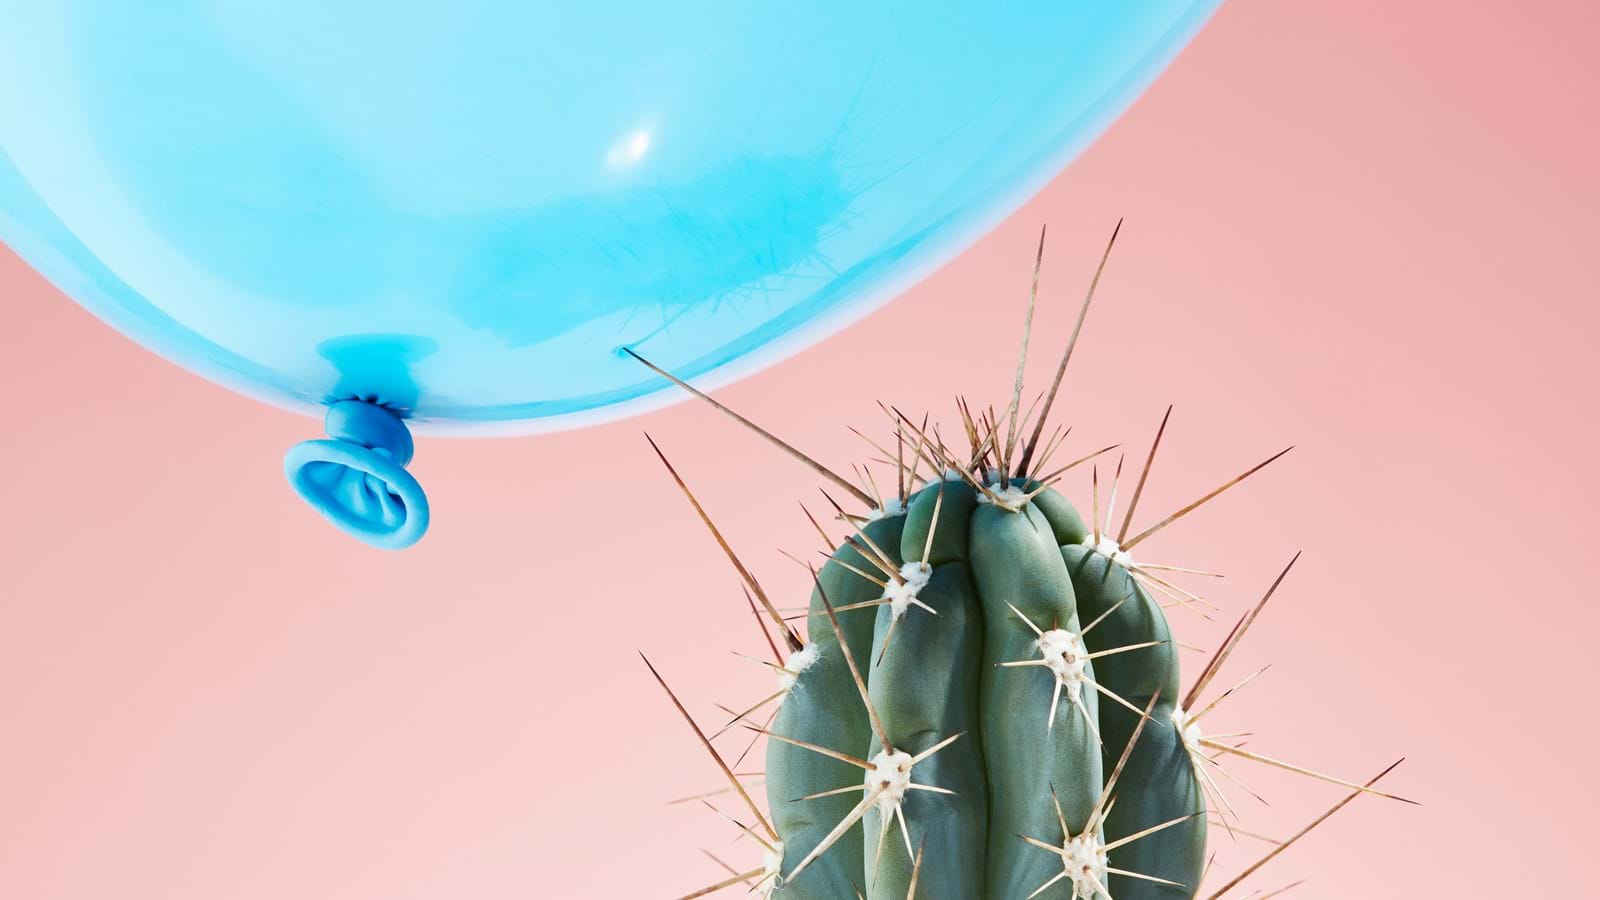 Balloon close to cactus